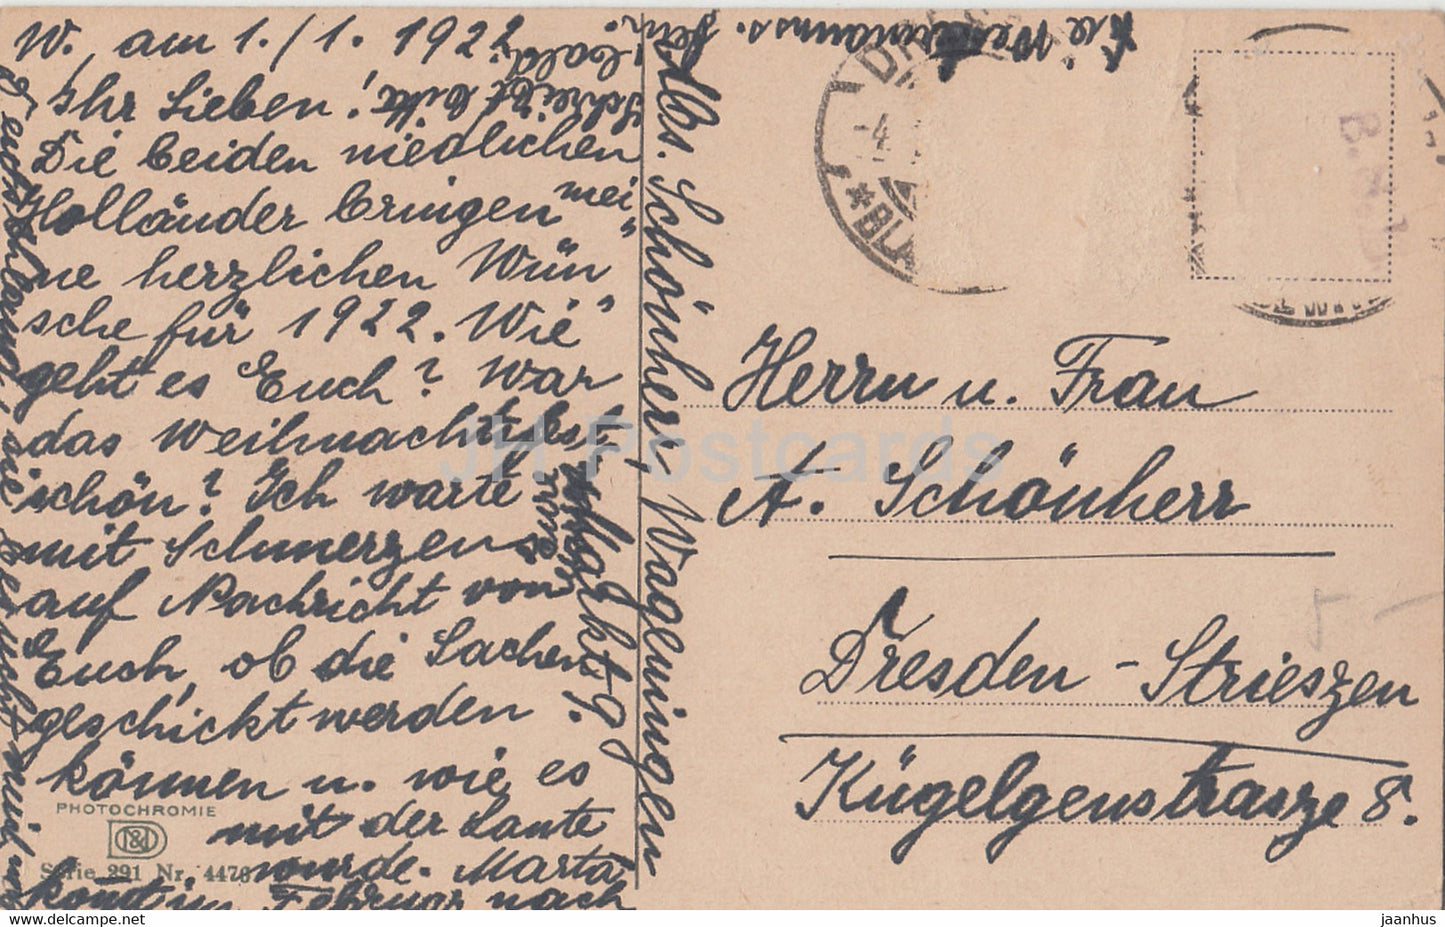 Kinder in Trachten – Windmühle – Photochromie – 4476 – alte Postkarte – 1922 – Niederlande – gebraucht